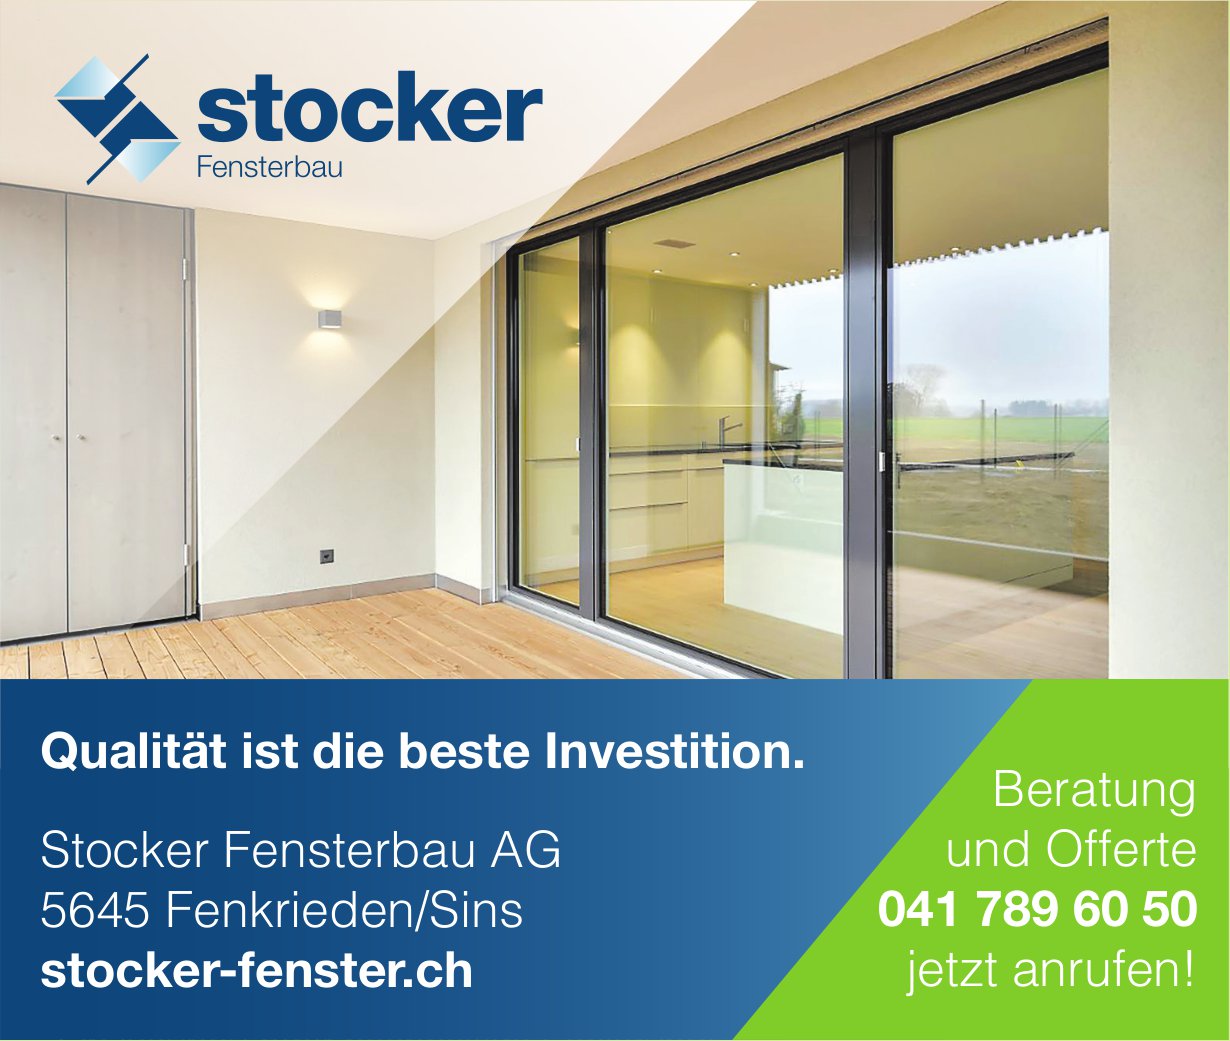 Stocker Fensterbau AG, Fenkrieden/Sins - Qualität ist die beste Investition.